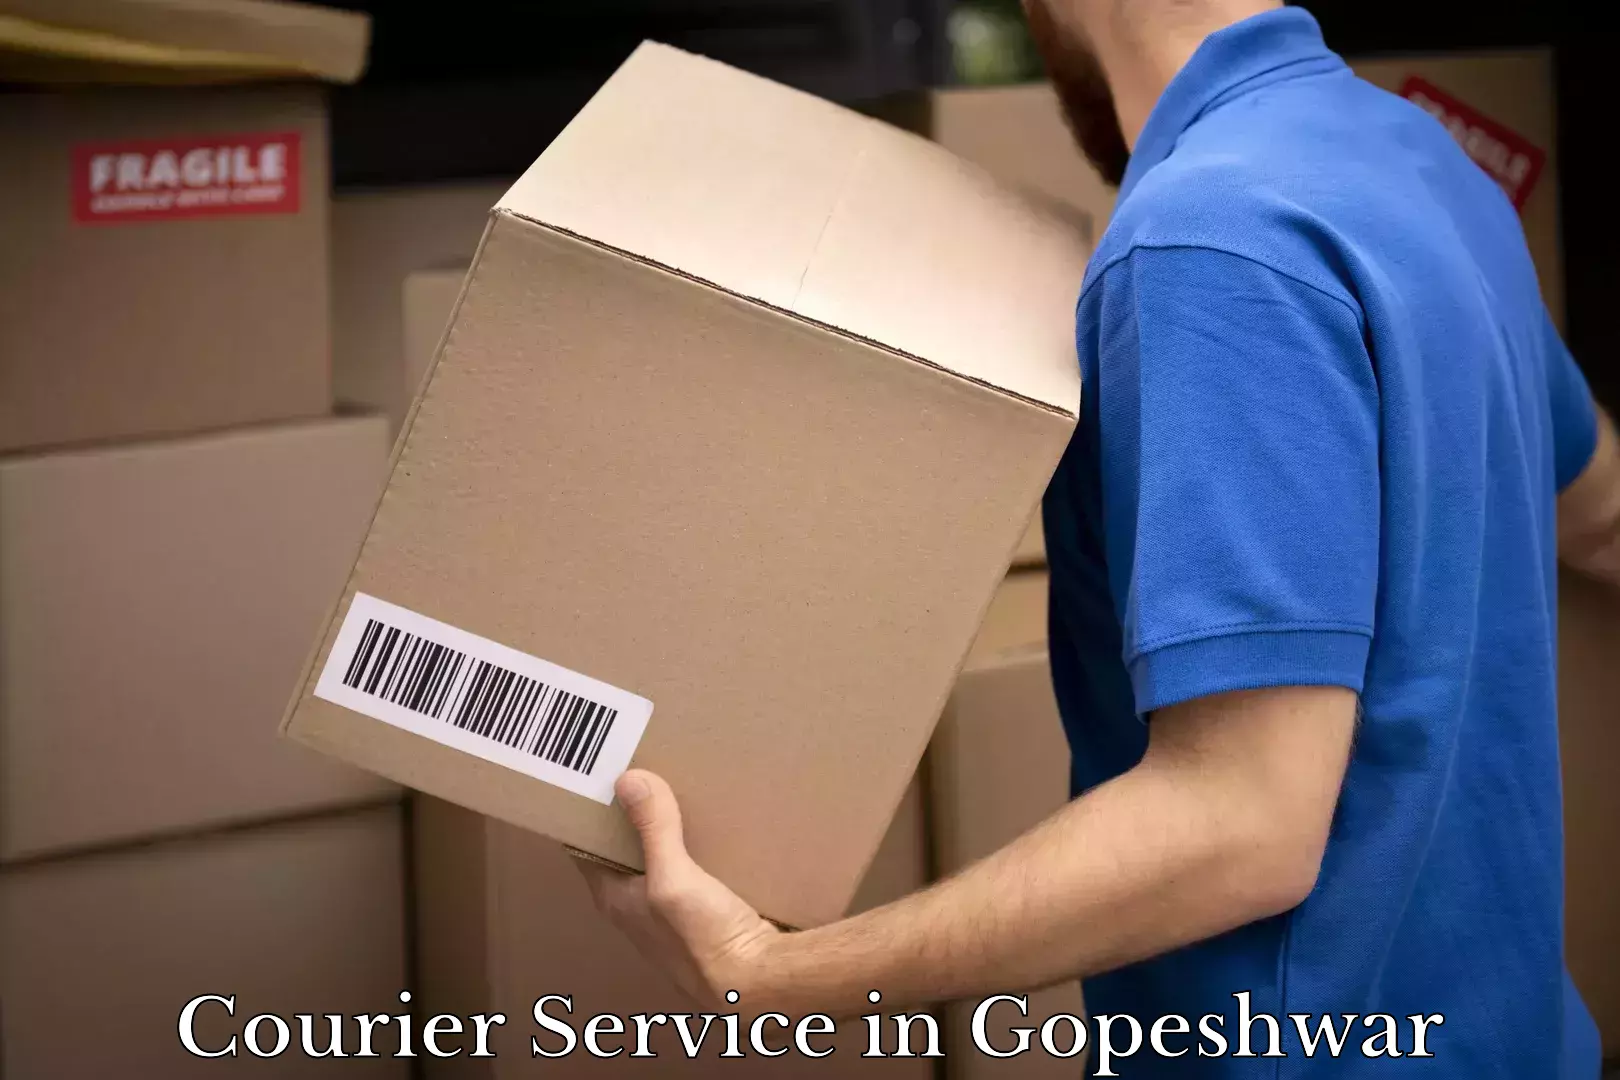 Secure packaging in Gopeshwar